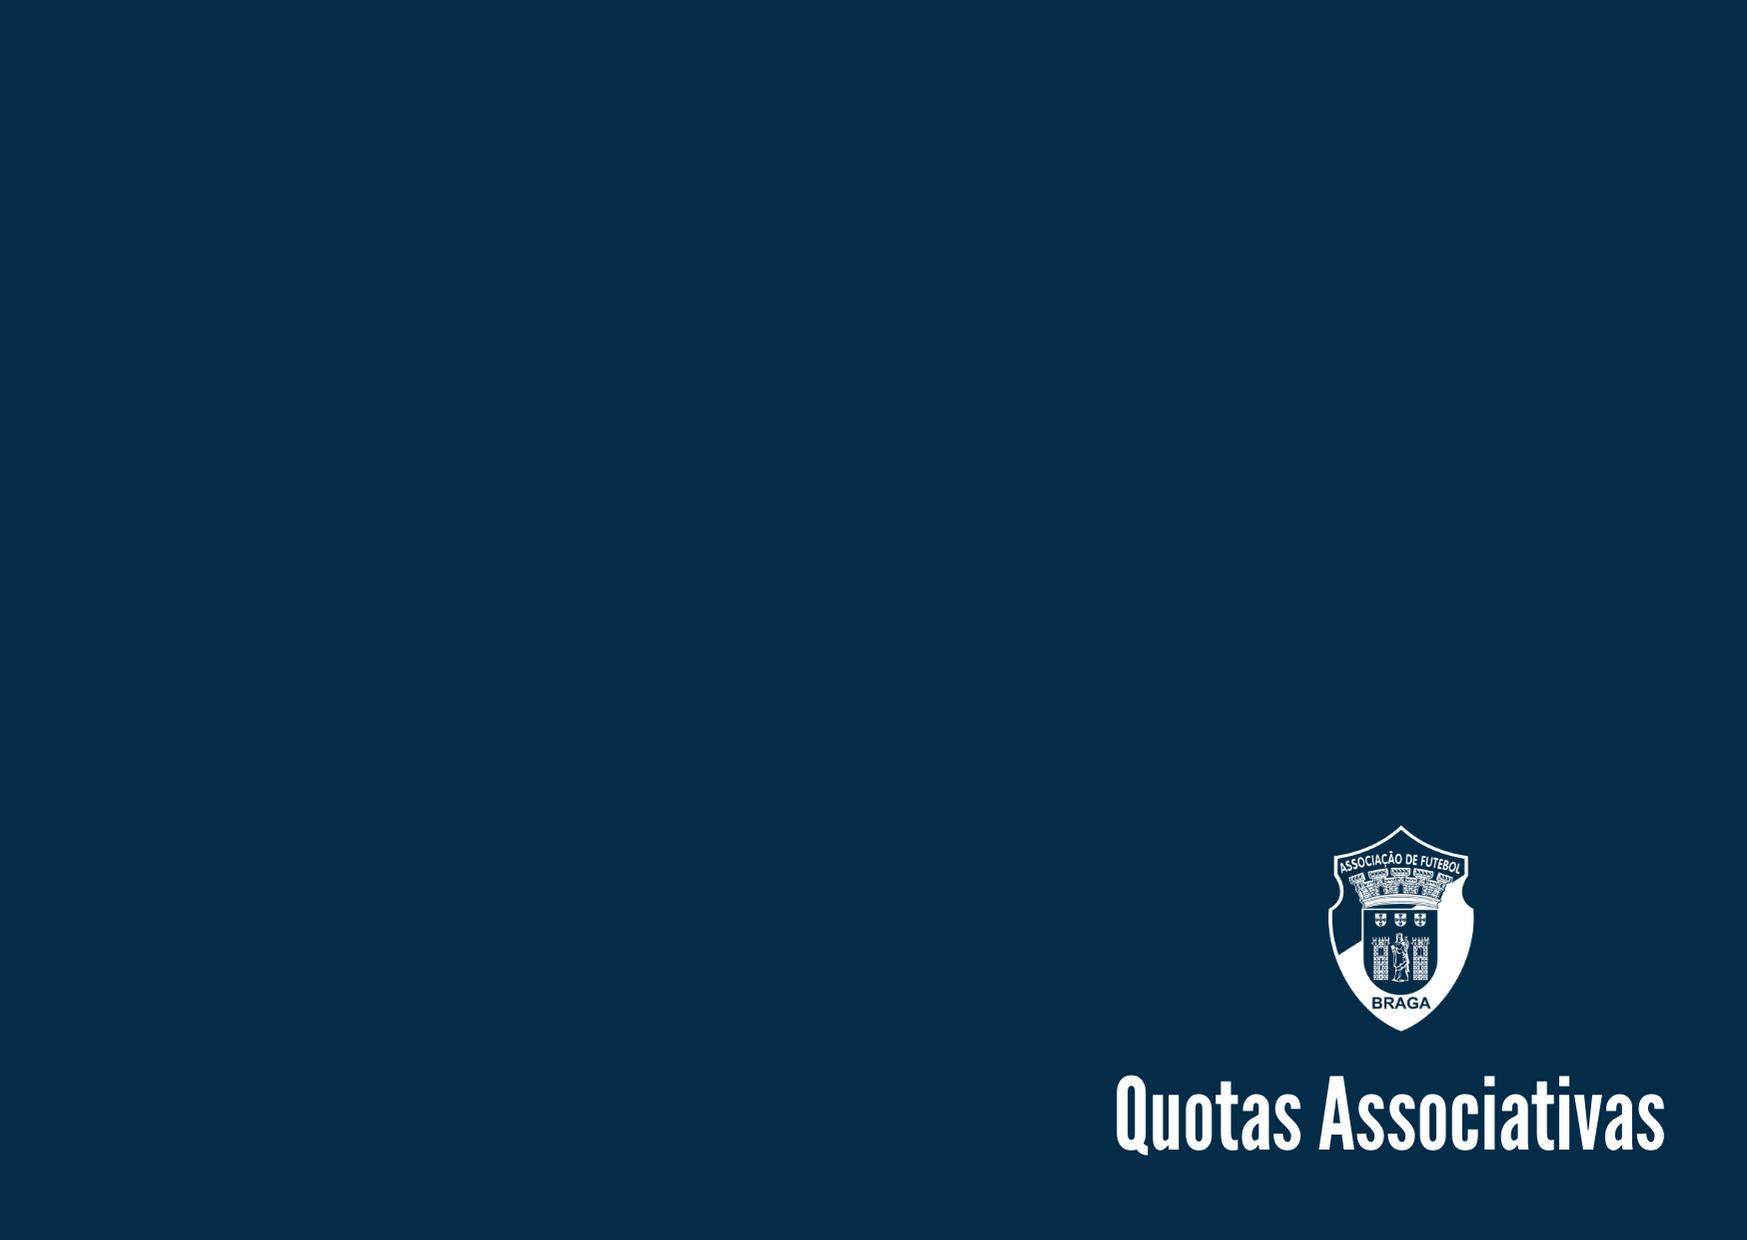 Futsal | Quotas Associativas de Participação em Competições Oficiais